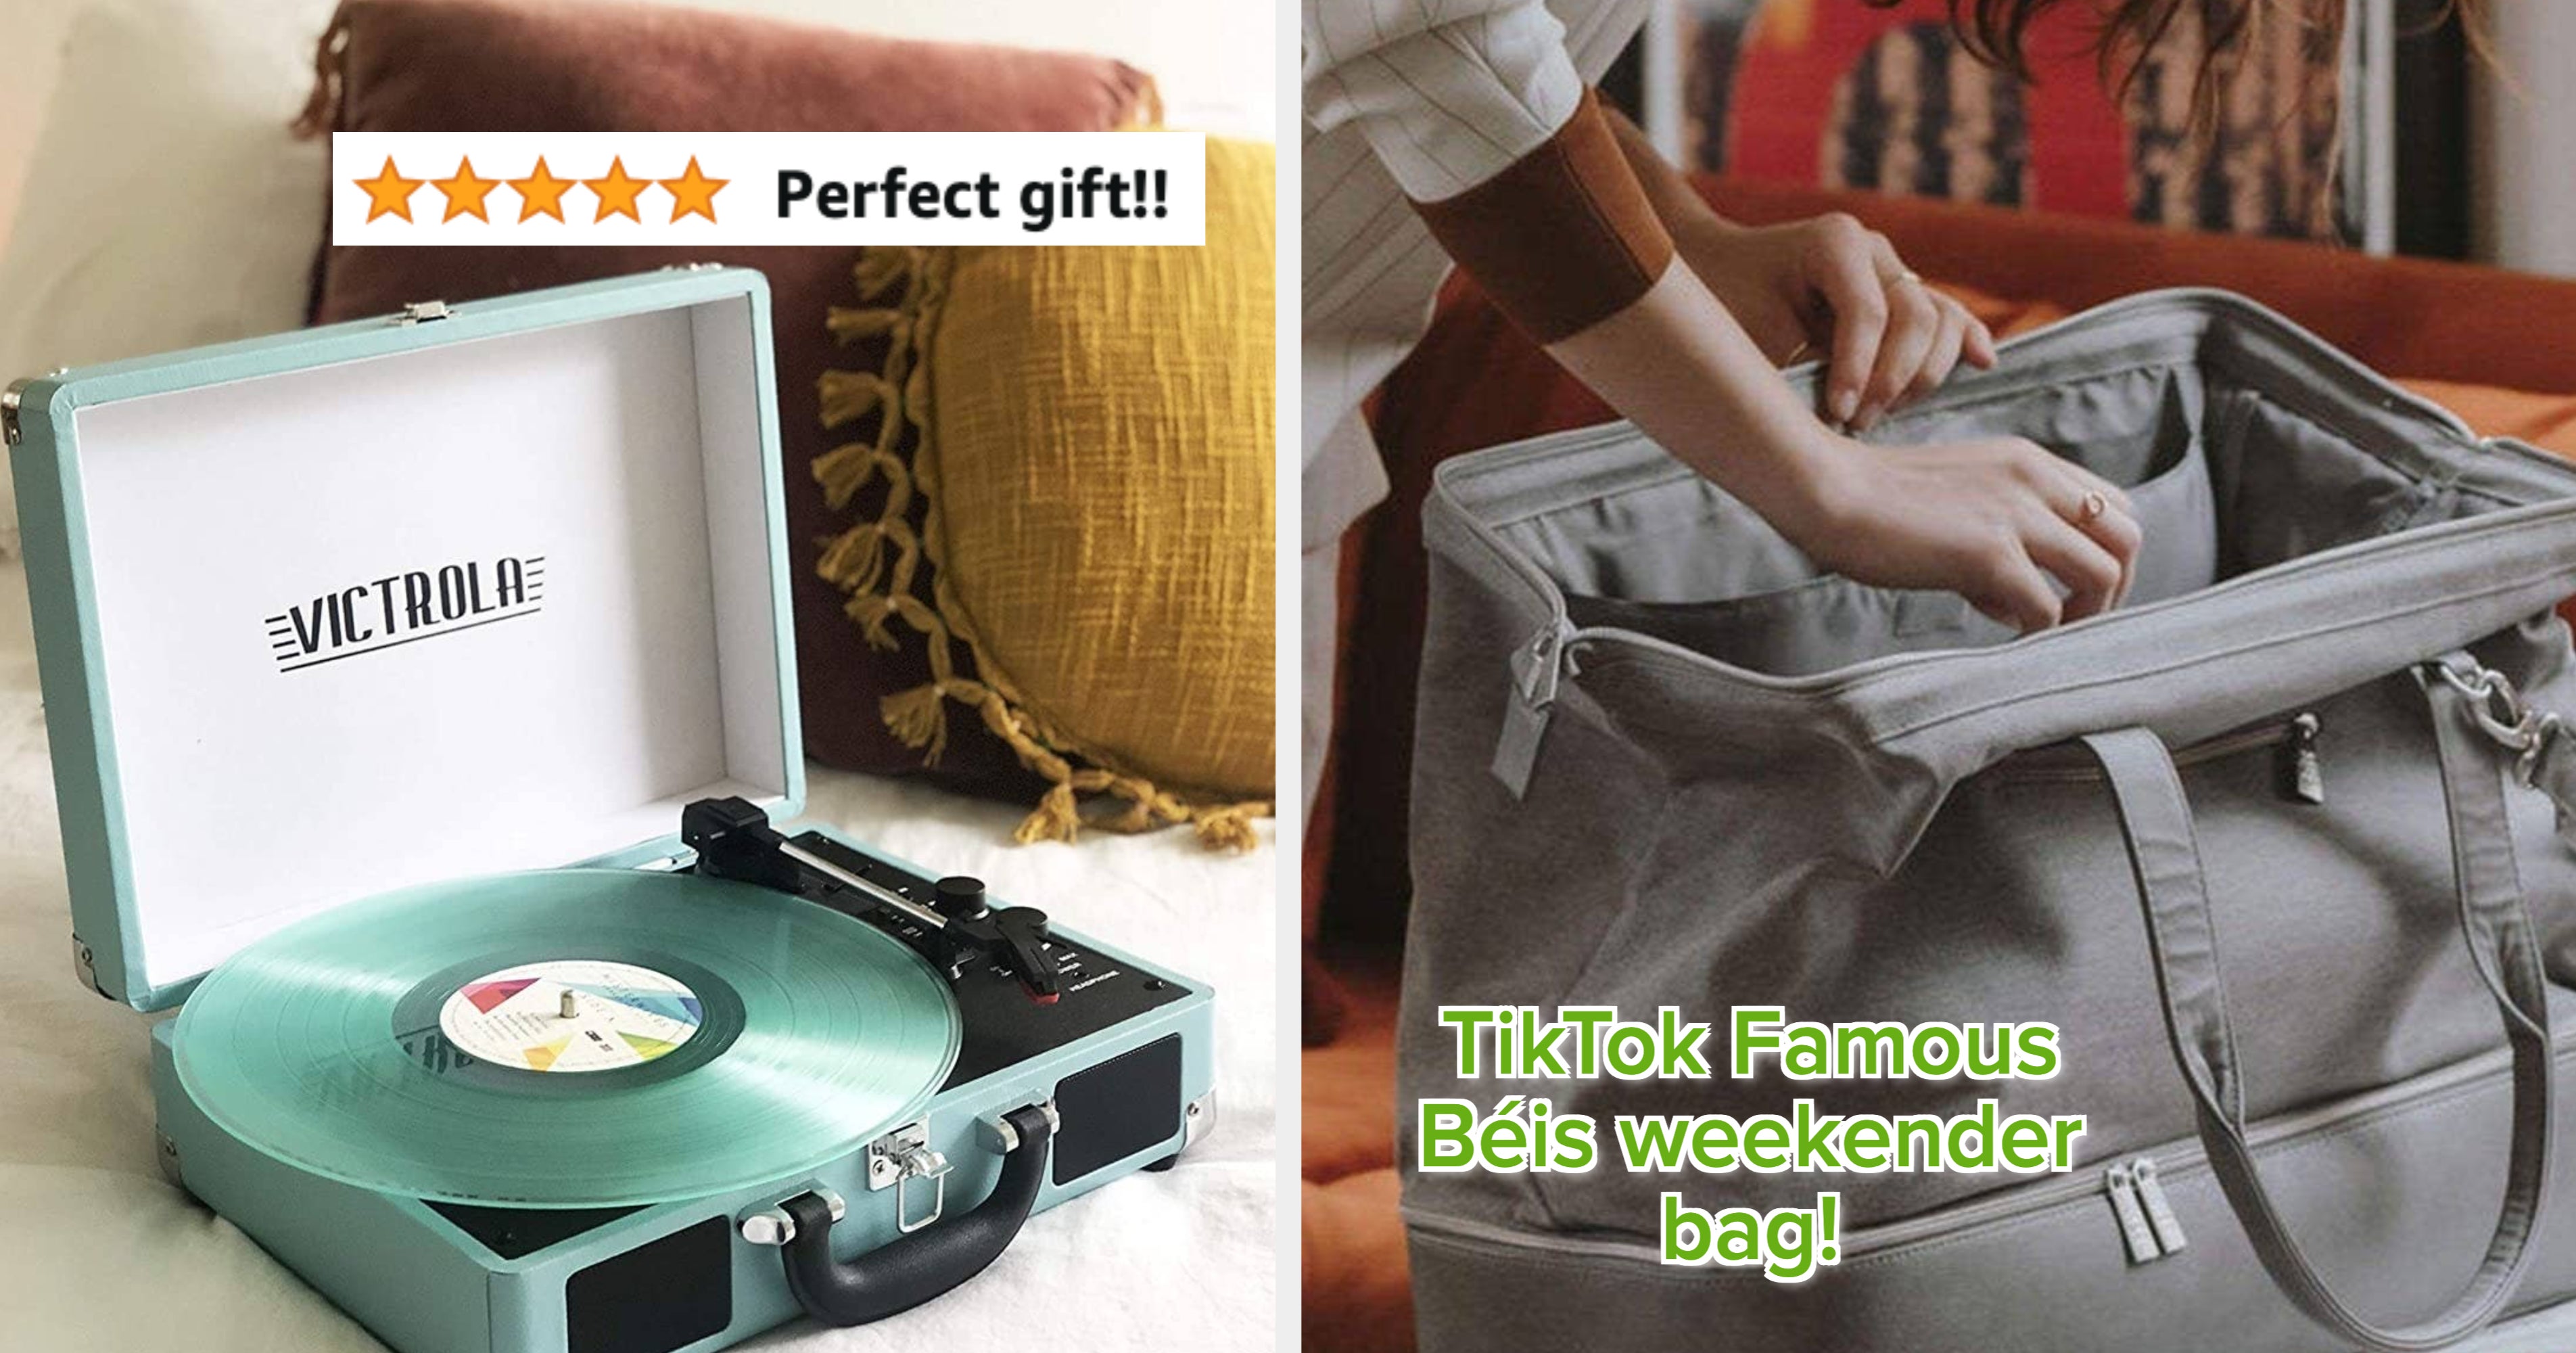 Retro Vinyl Record Handbag - Gifteee Unique & Cool Gifts